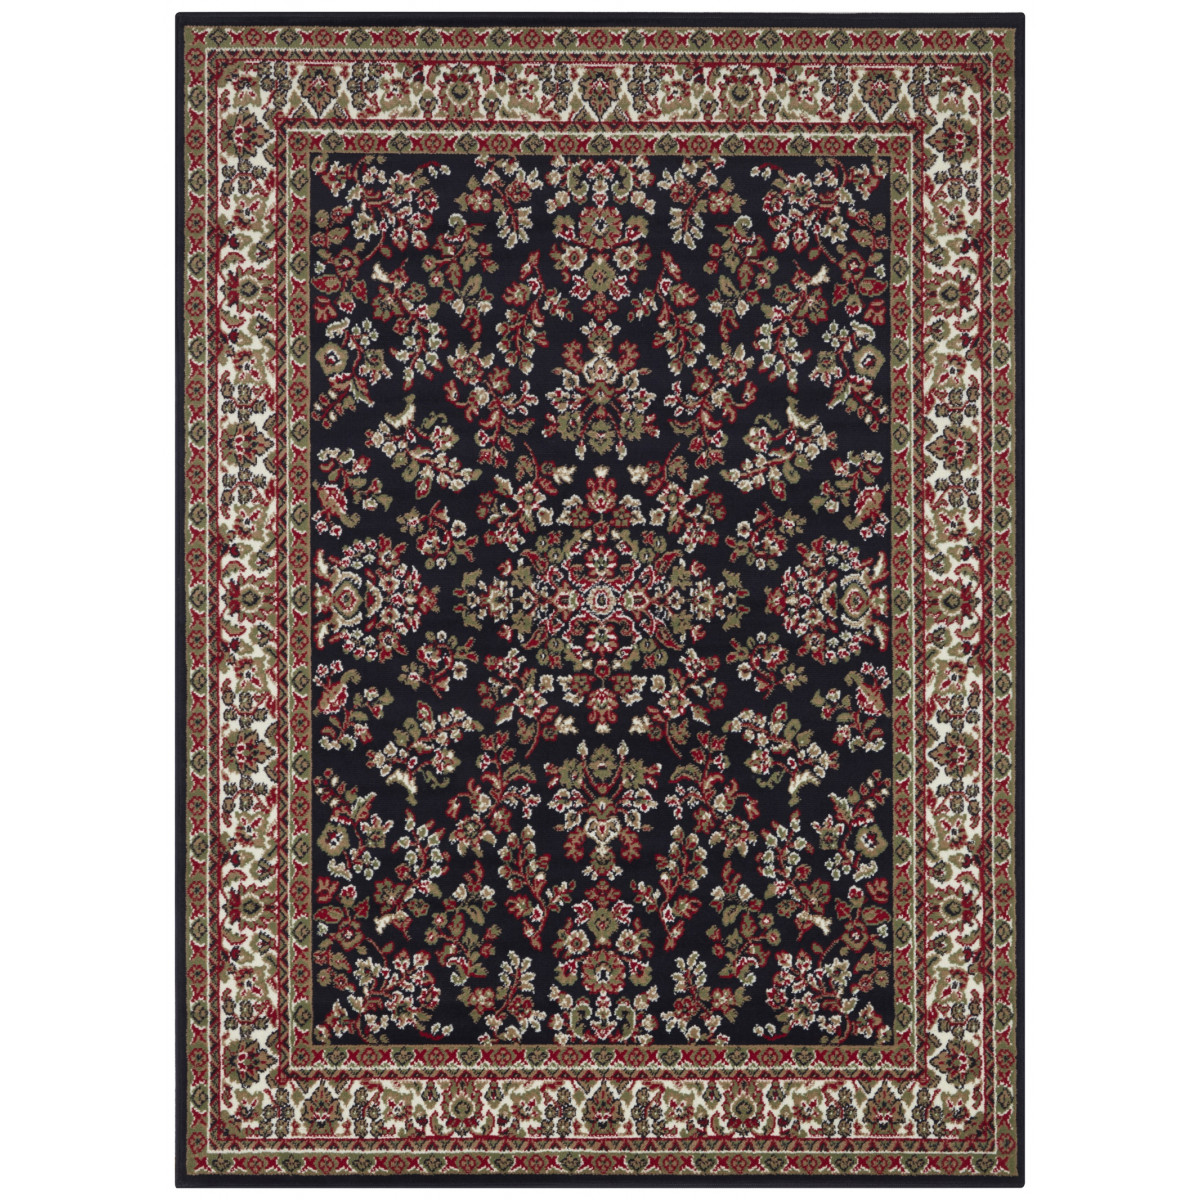 AKCE: 180x260 cm Kusový orientální koberec Mujkoberec Original 104353